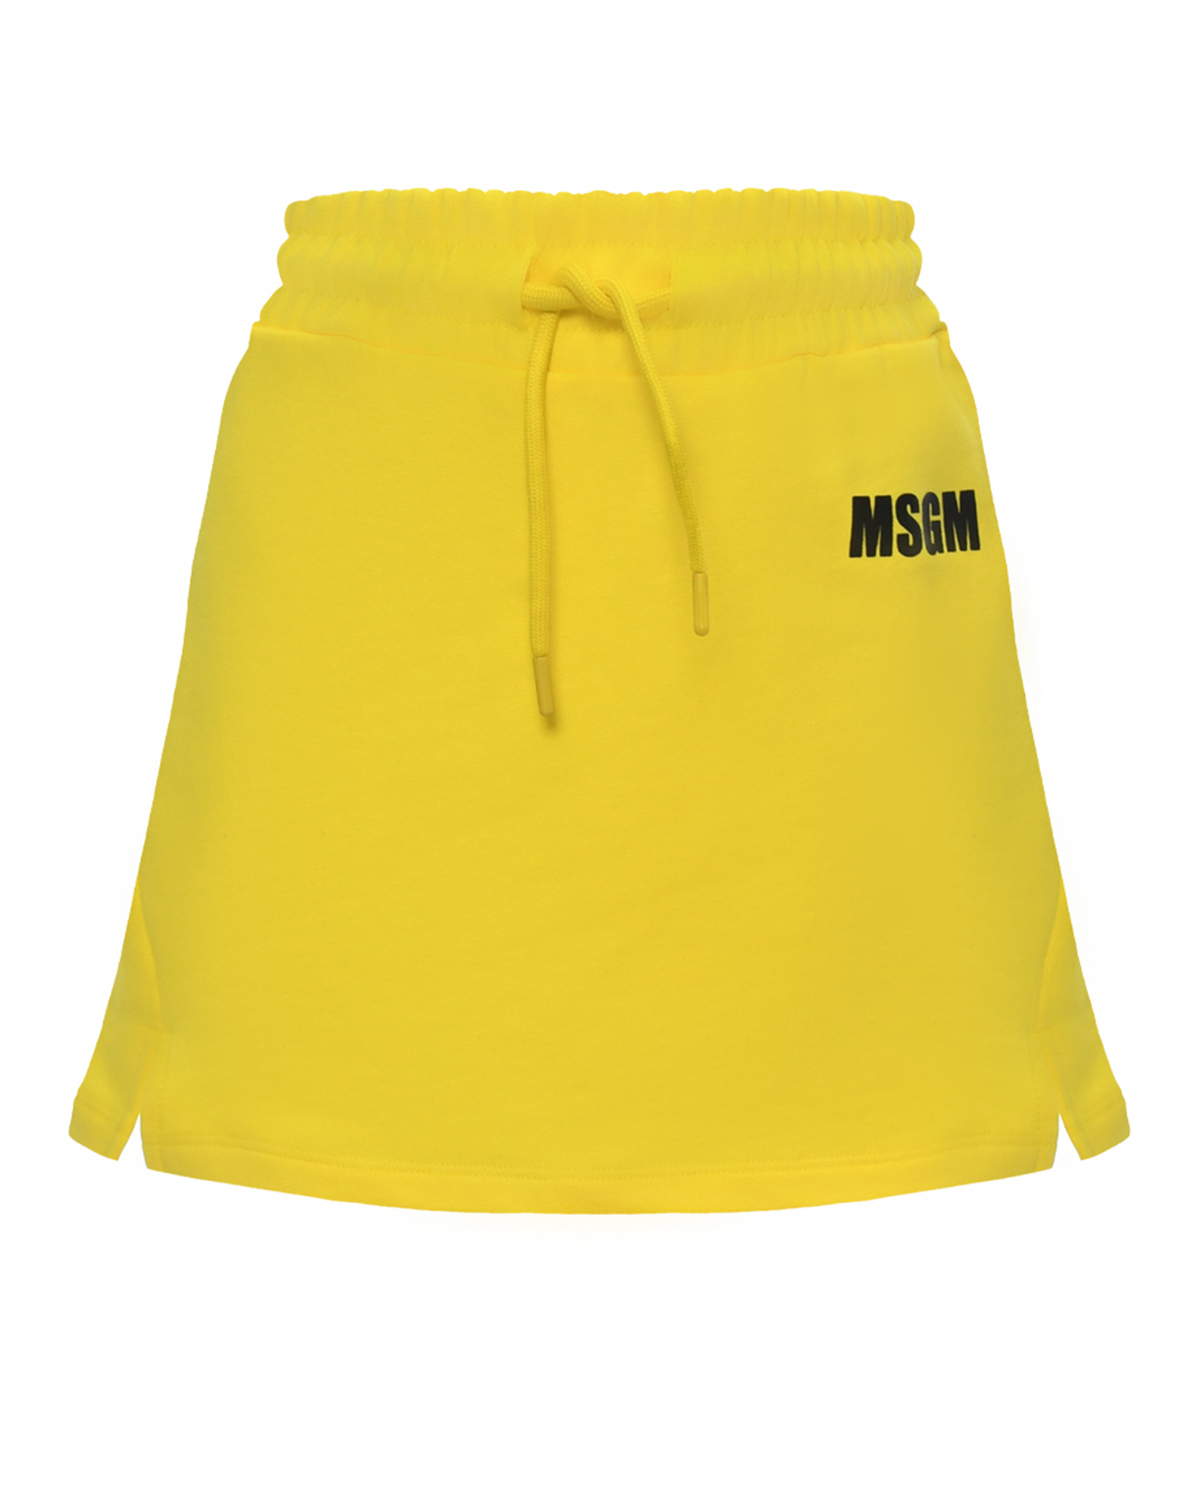 Юбка с принтом сзади, желтая MSGM, размер 128, цвет желтый - фото 1